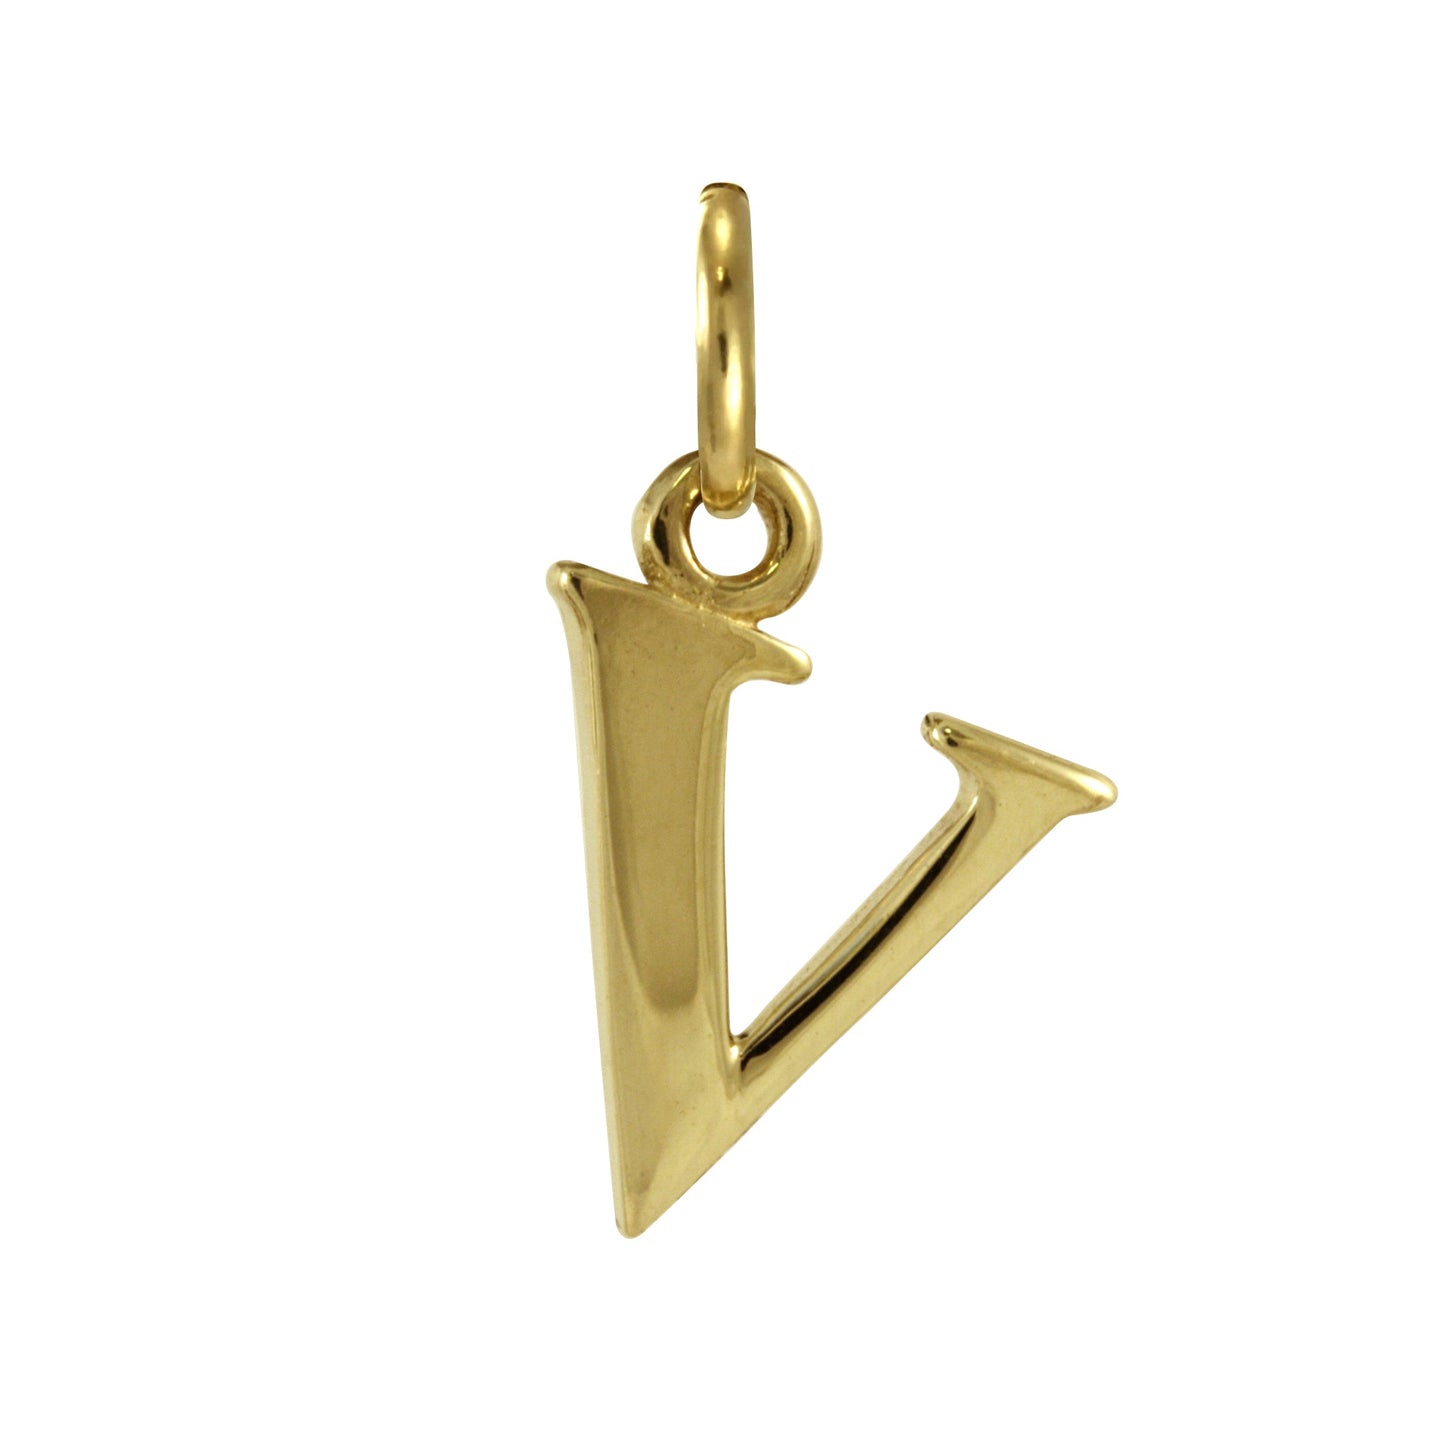 9ct Gold Letter Alphabet Charm A - Z